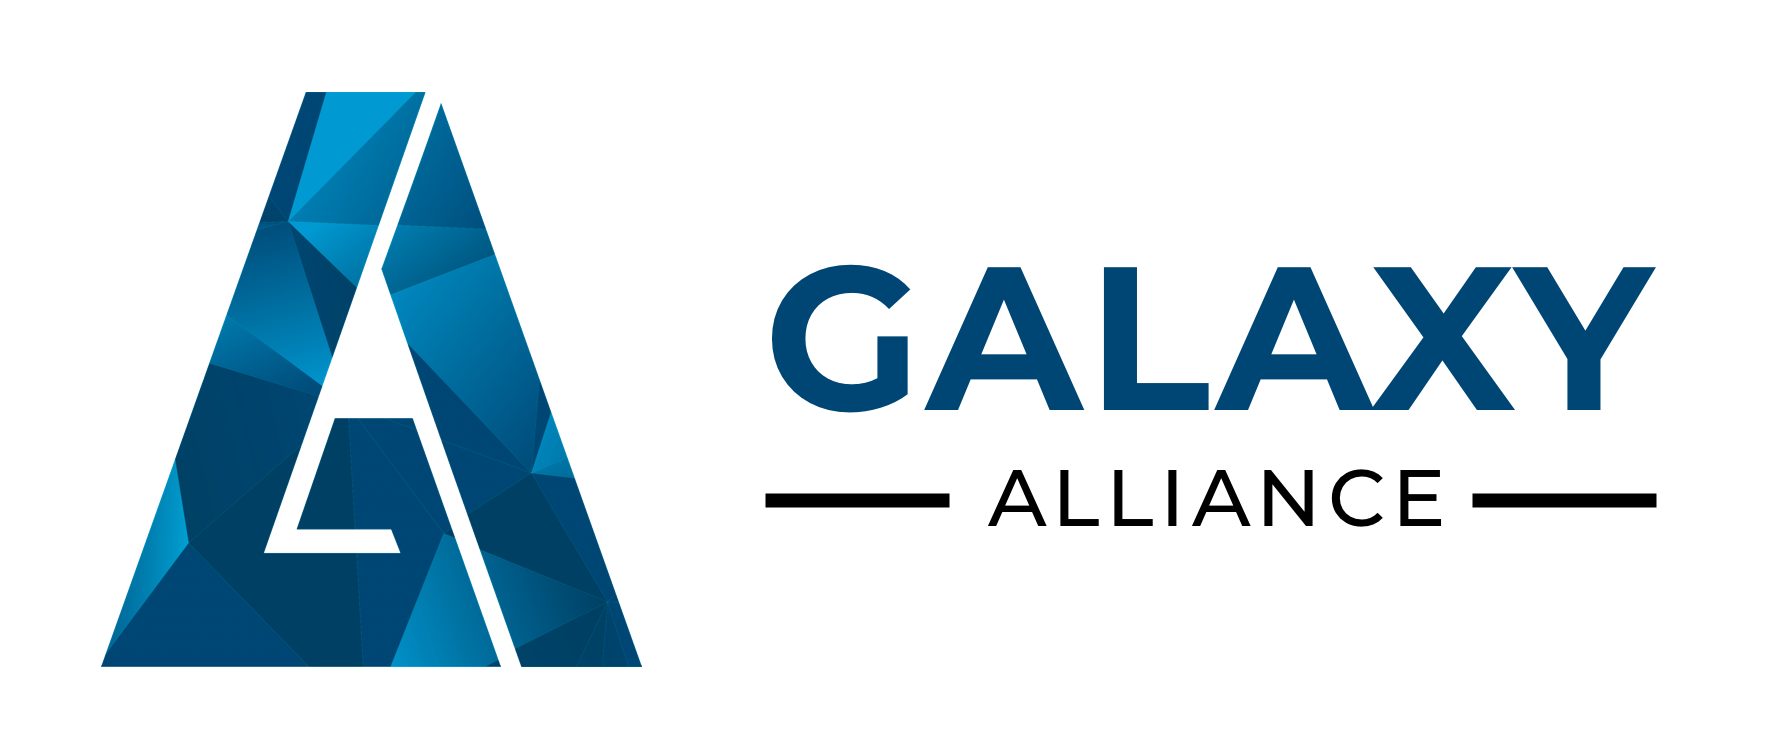 Galaxy Alliance